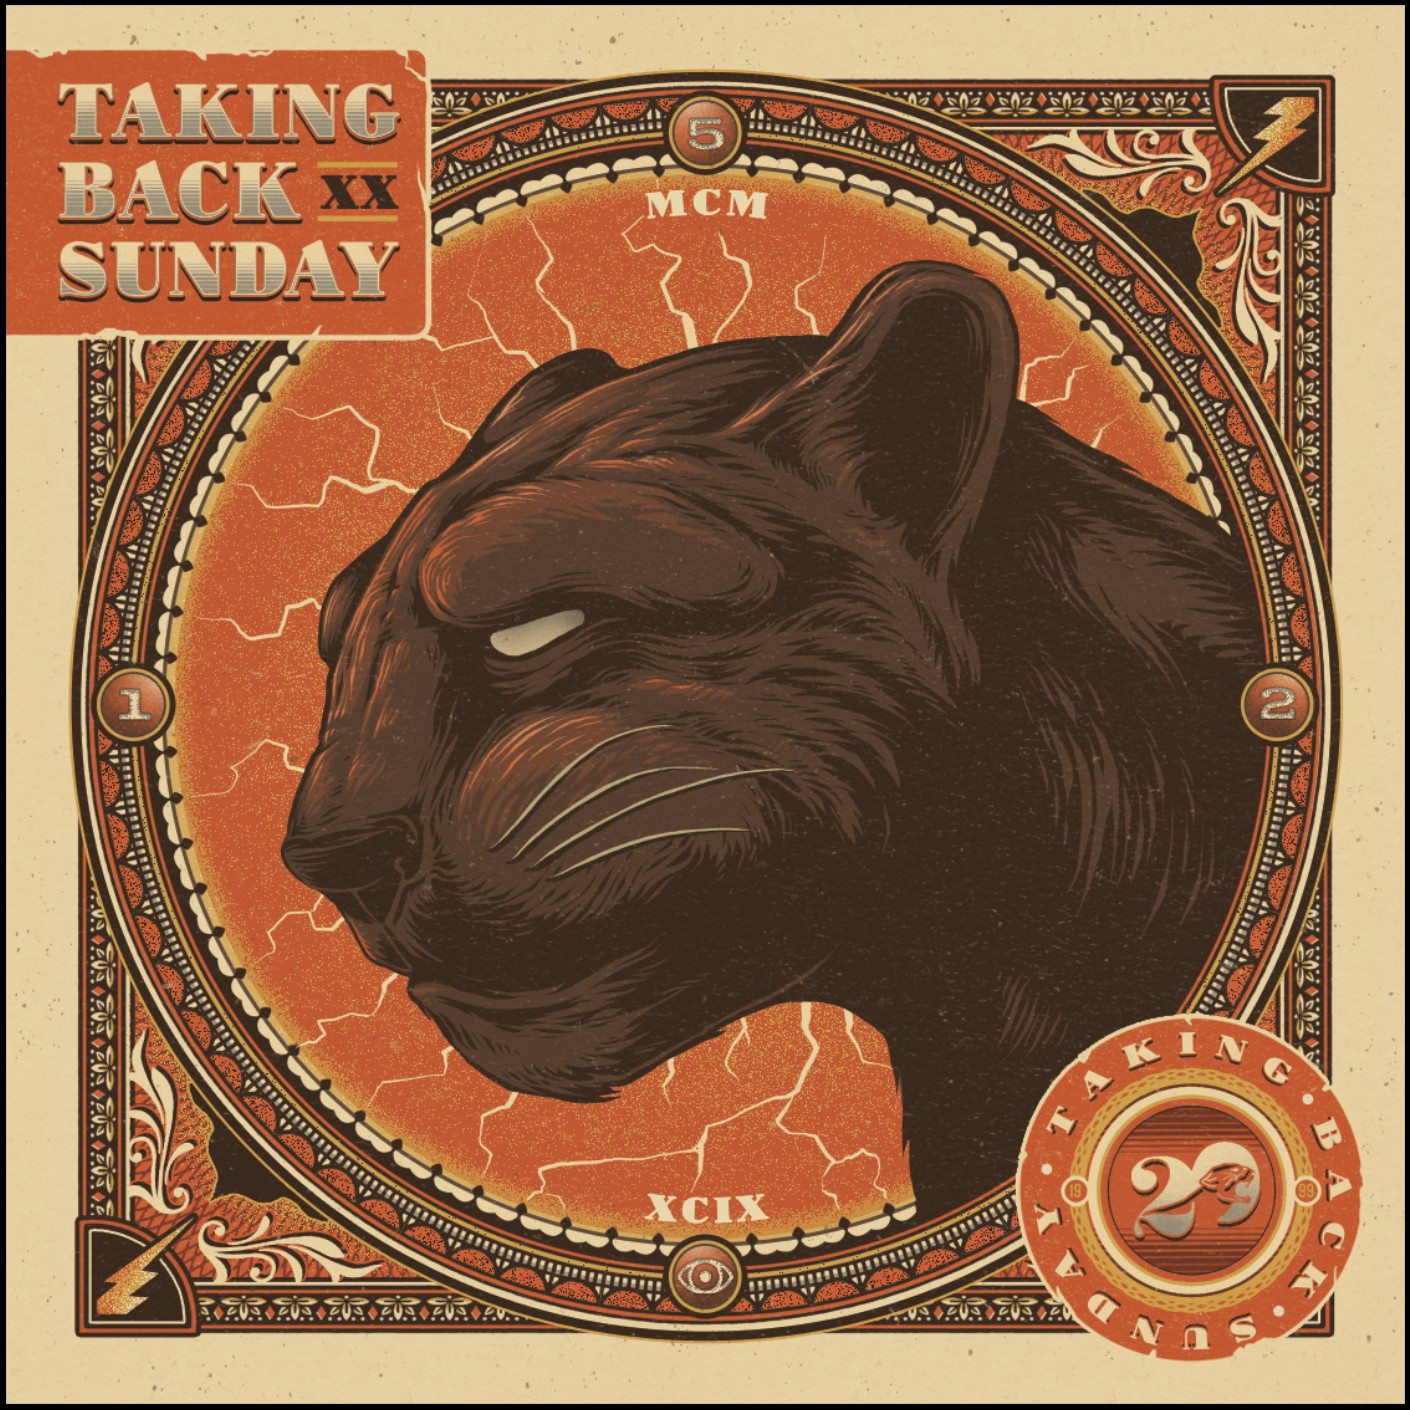 Taking Back Sunday 'Twenty' album cover